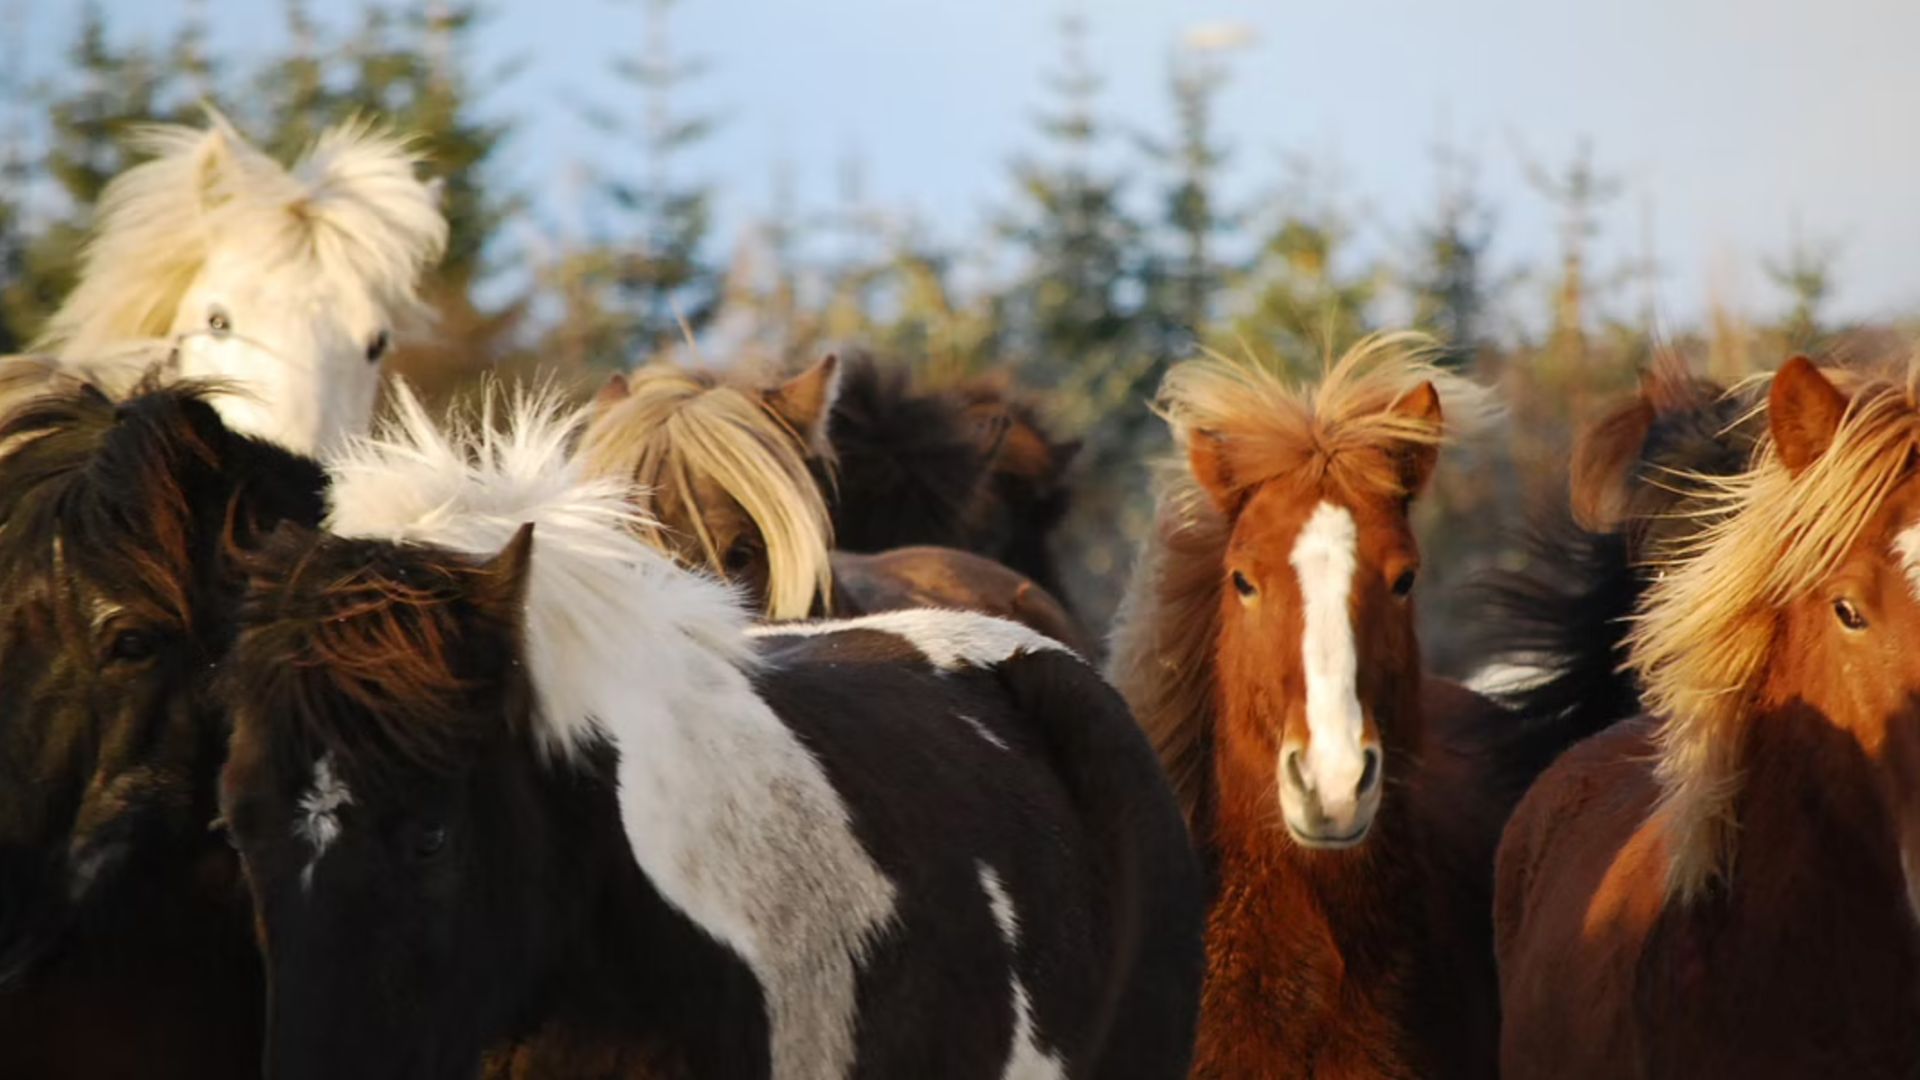 The Icelandic Horses